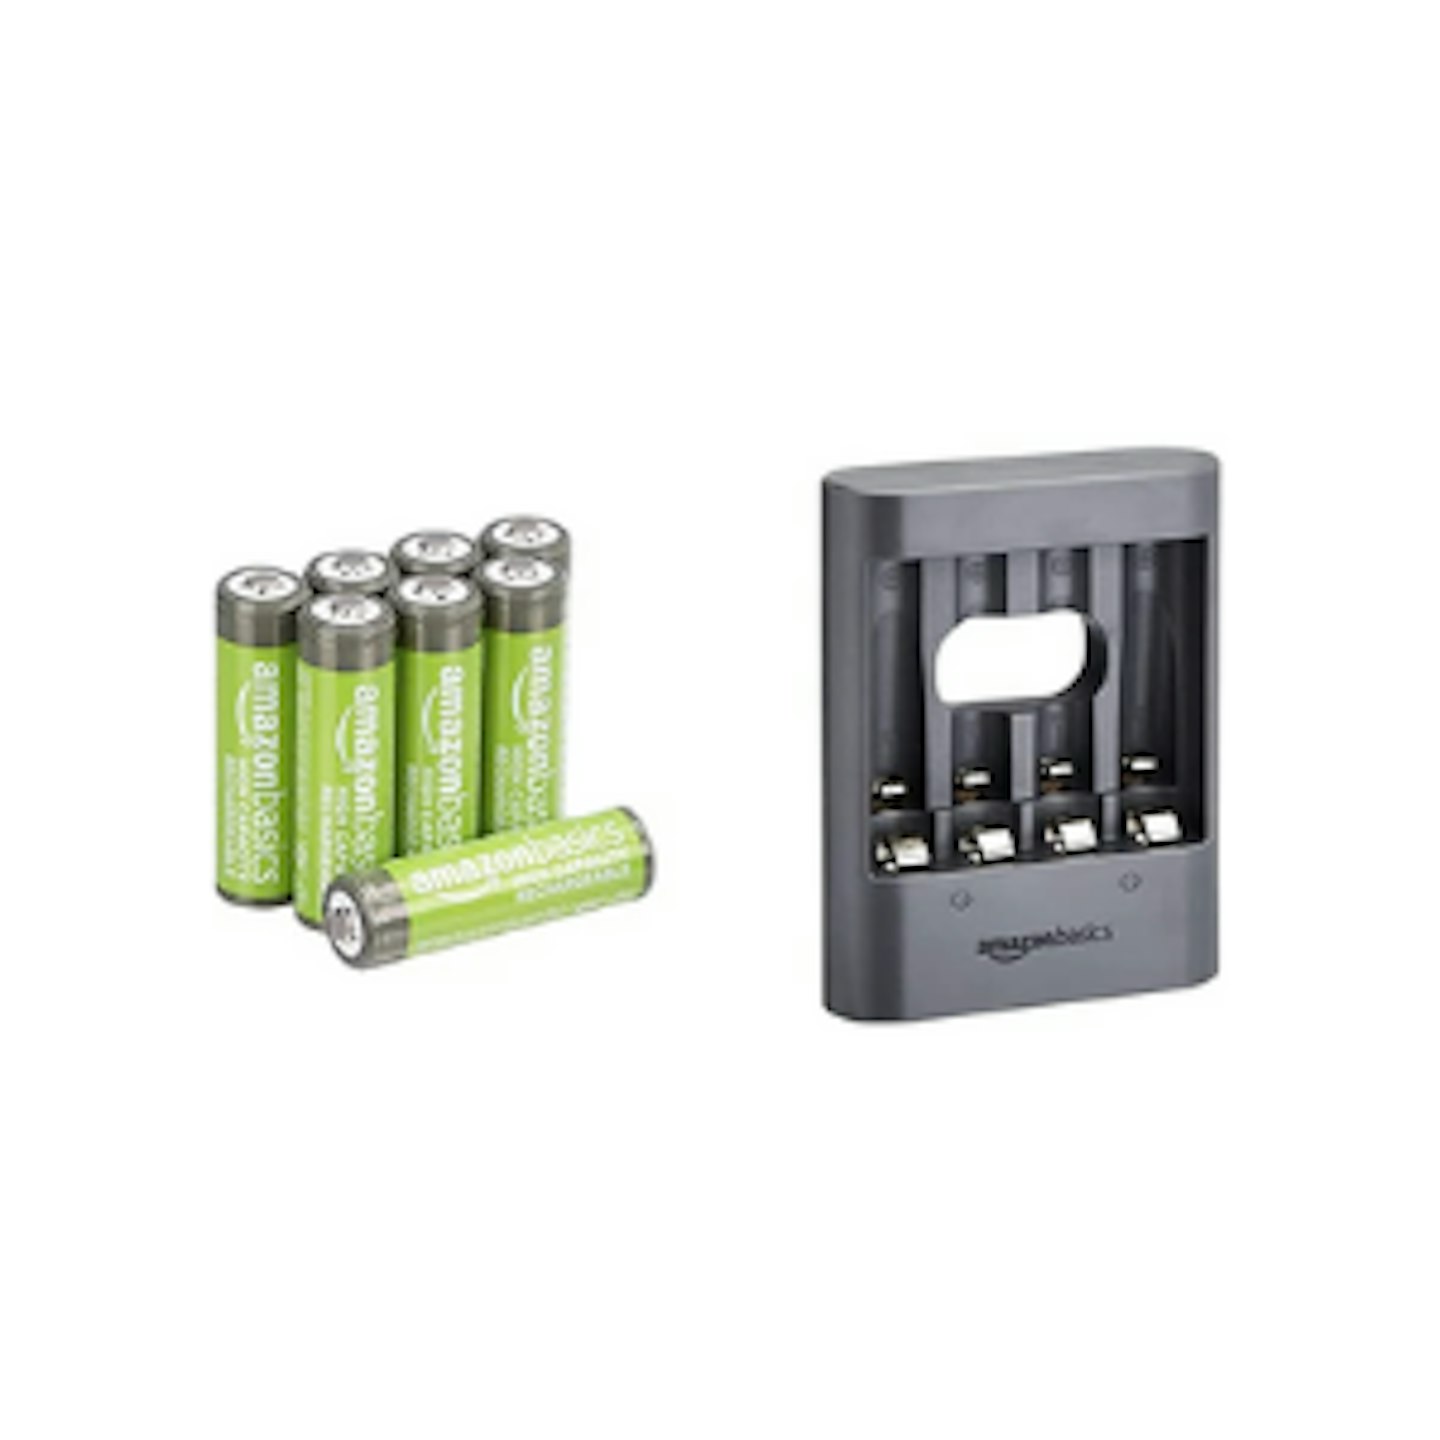 Amazon Basics AA rechargeable batteries